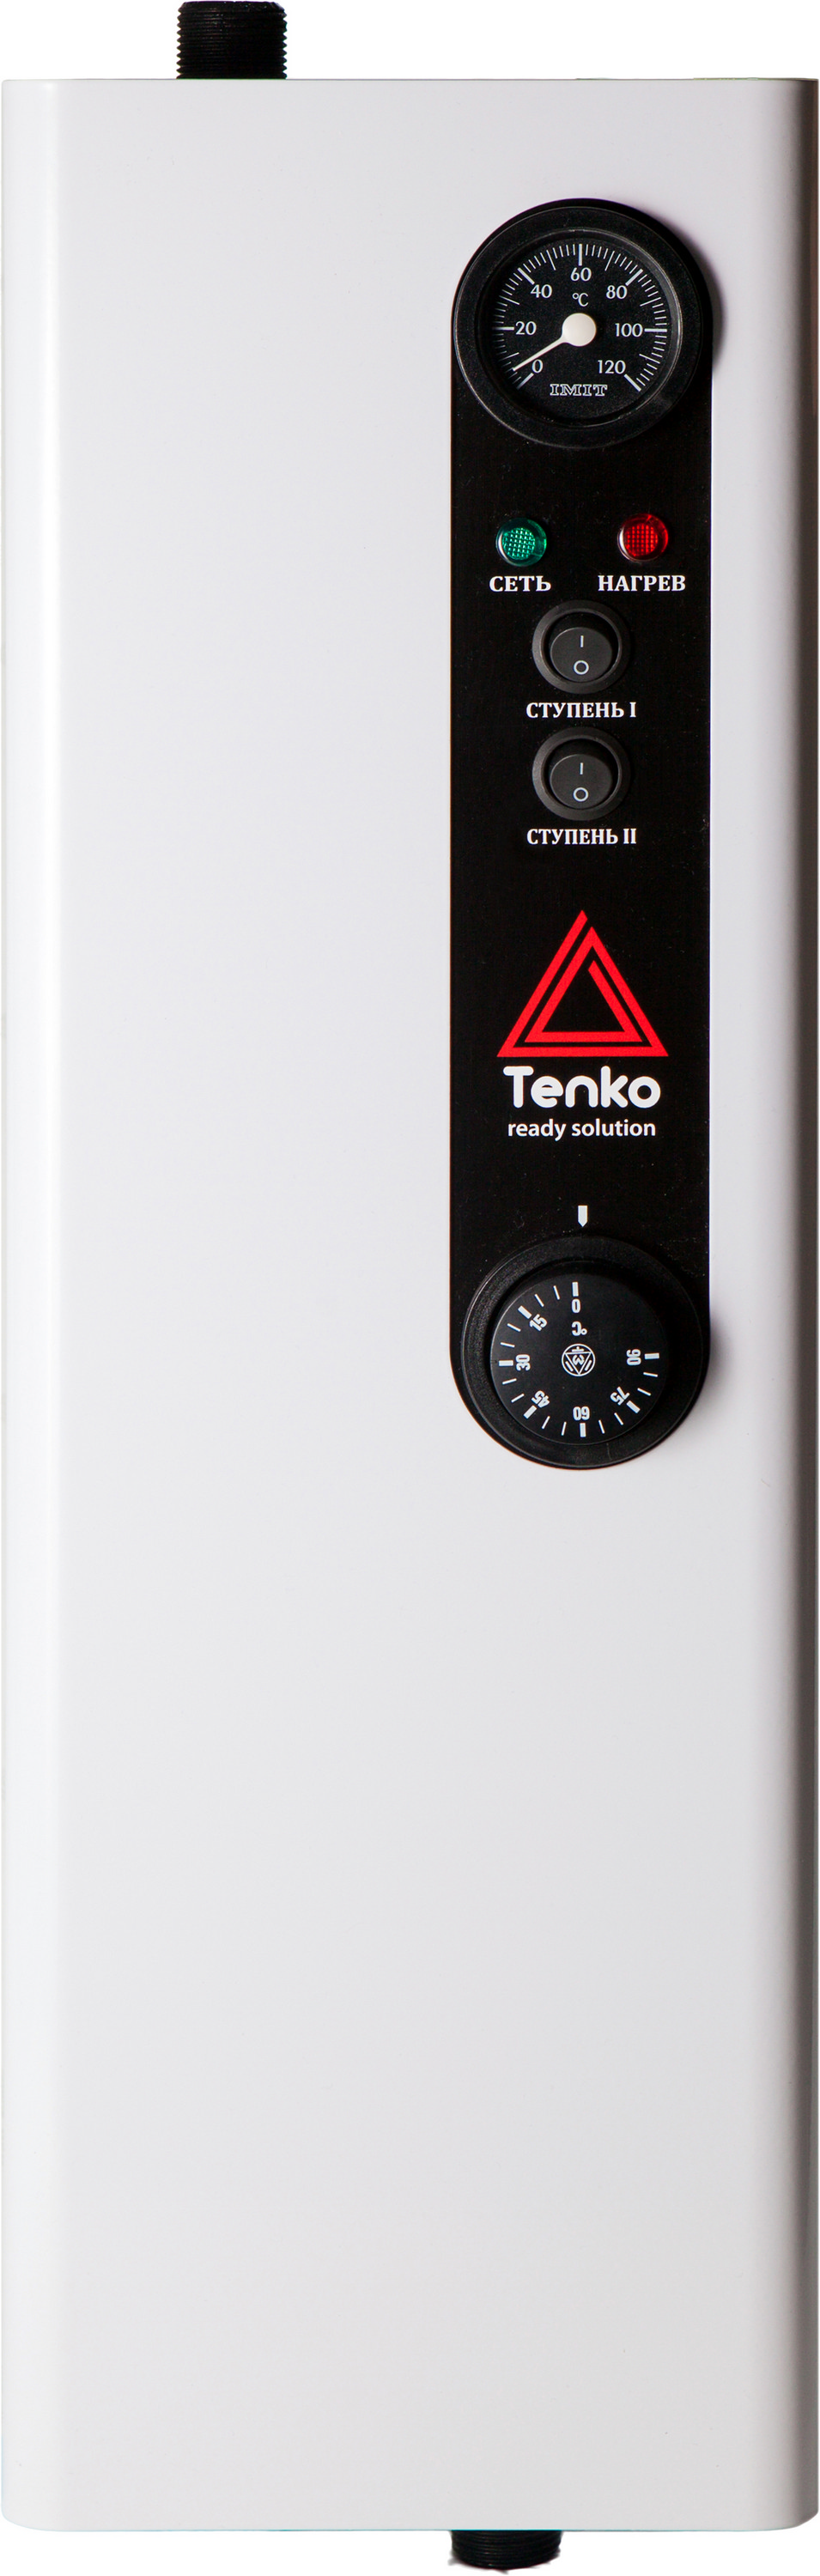 Отзывы настенный электрокотел Tenko Эконом 6 220 в Украине